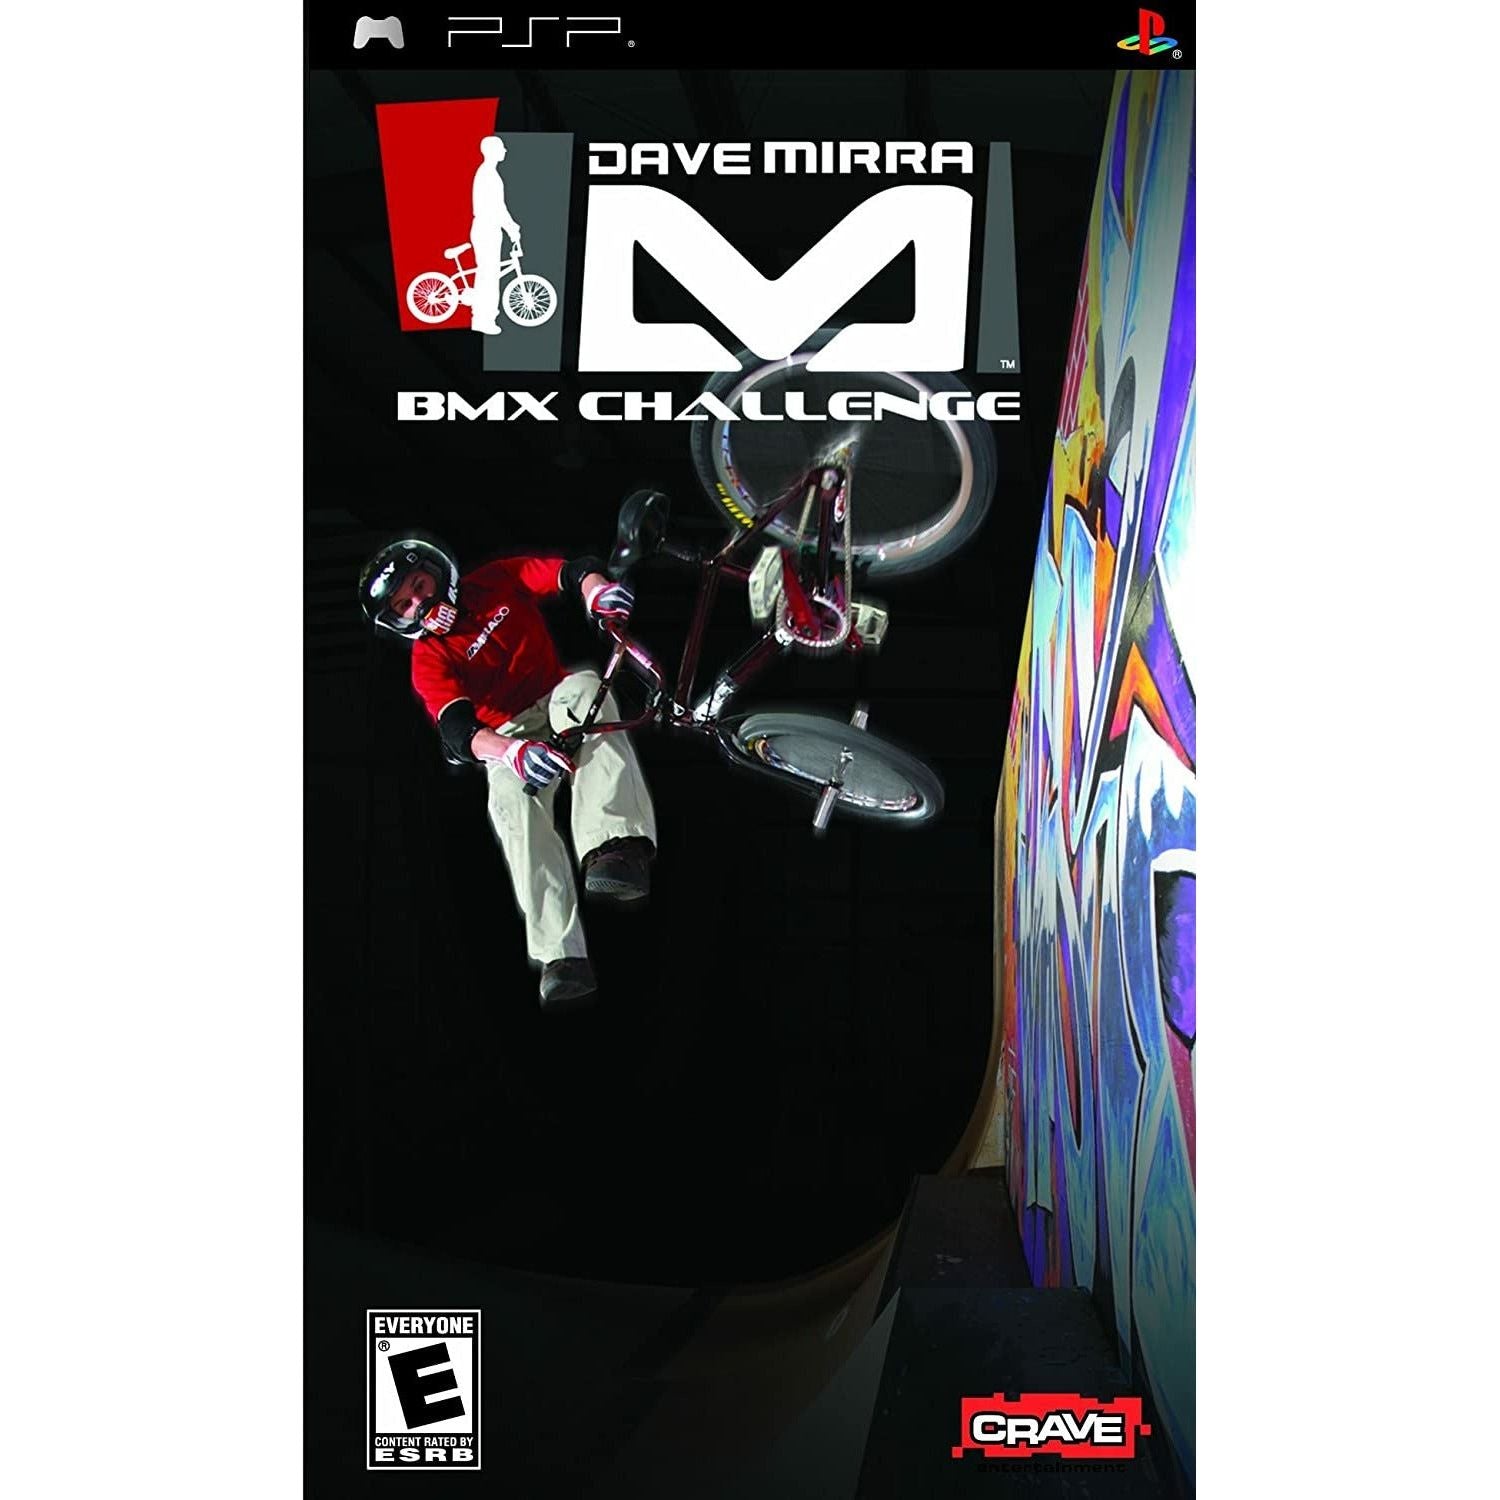 PSP - Dave Mirra BMX Challenge (In Case)